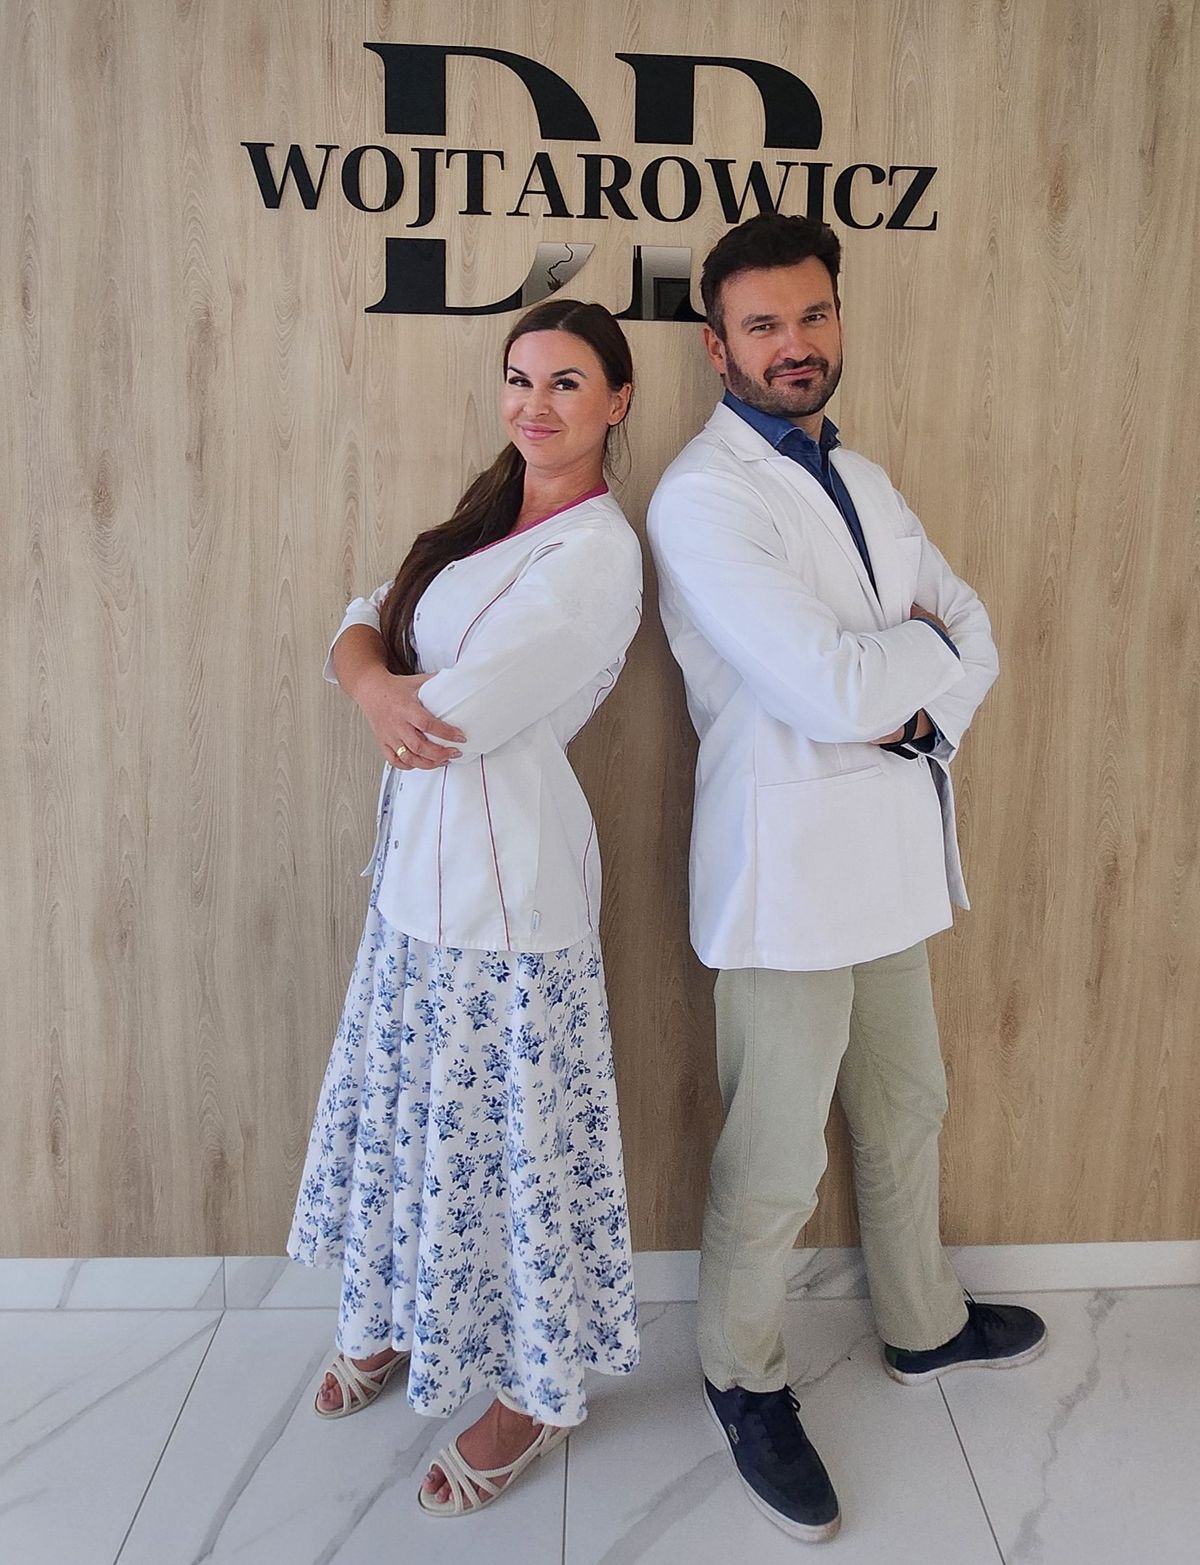 Foto: Dr. Katarzyna Wojtarowicz und Dr. Mateusz Wojtarowicz.